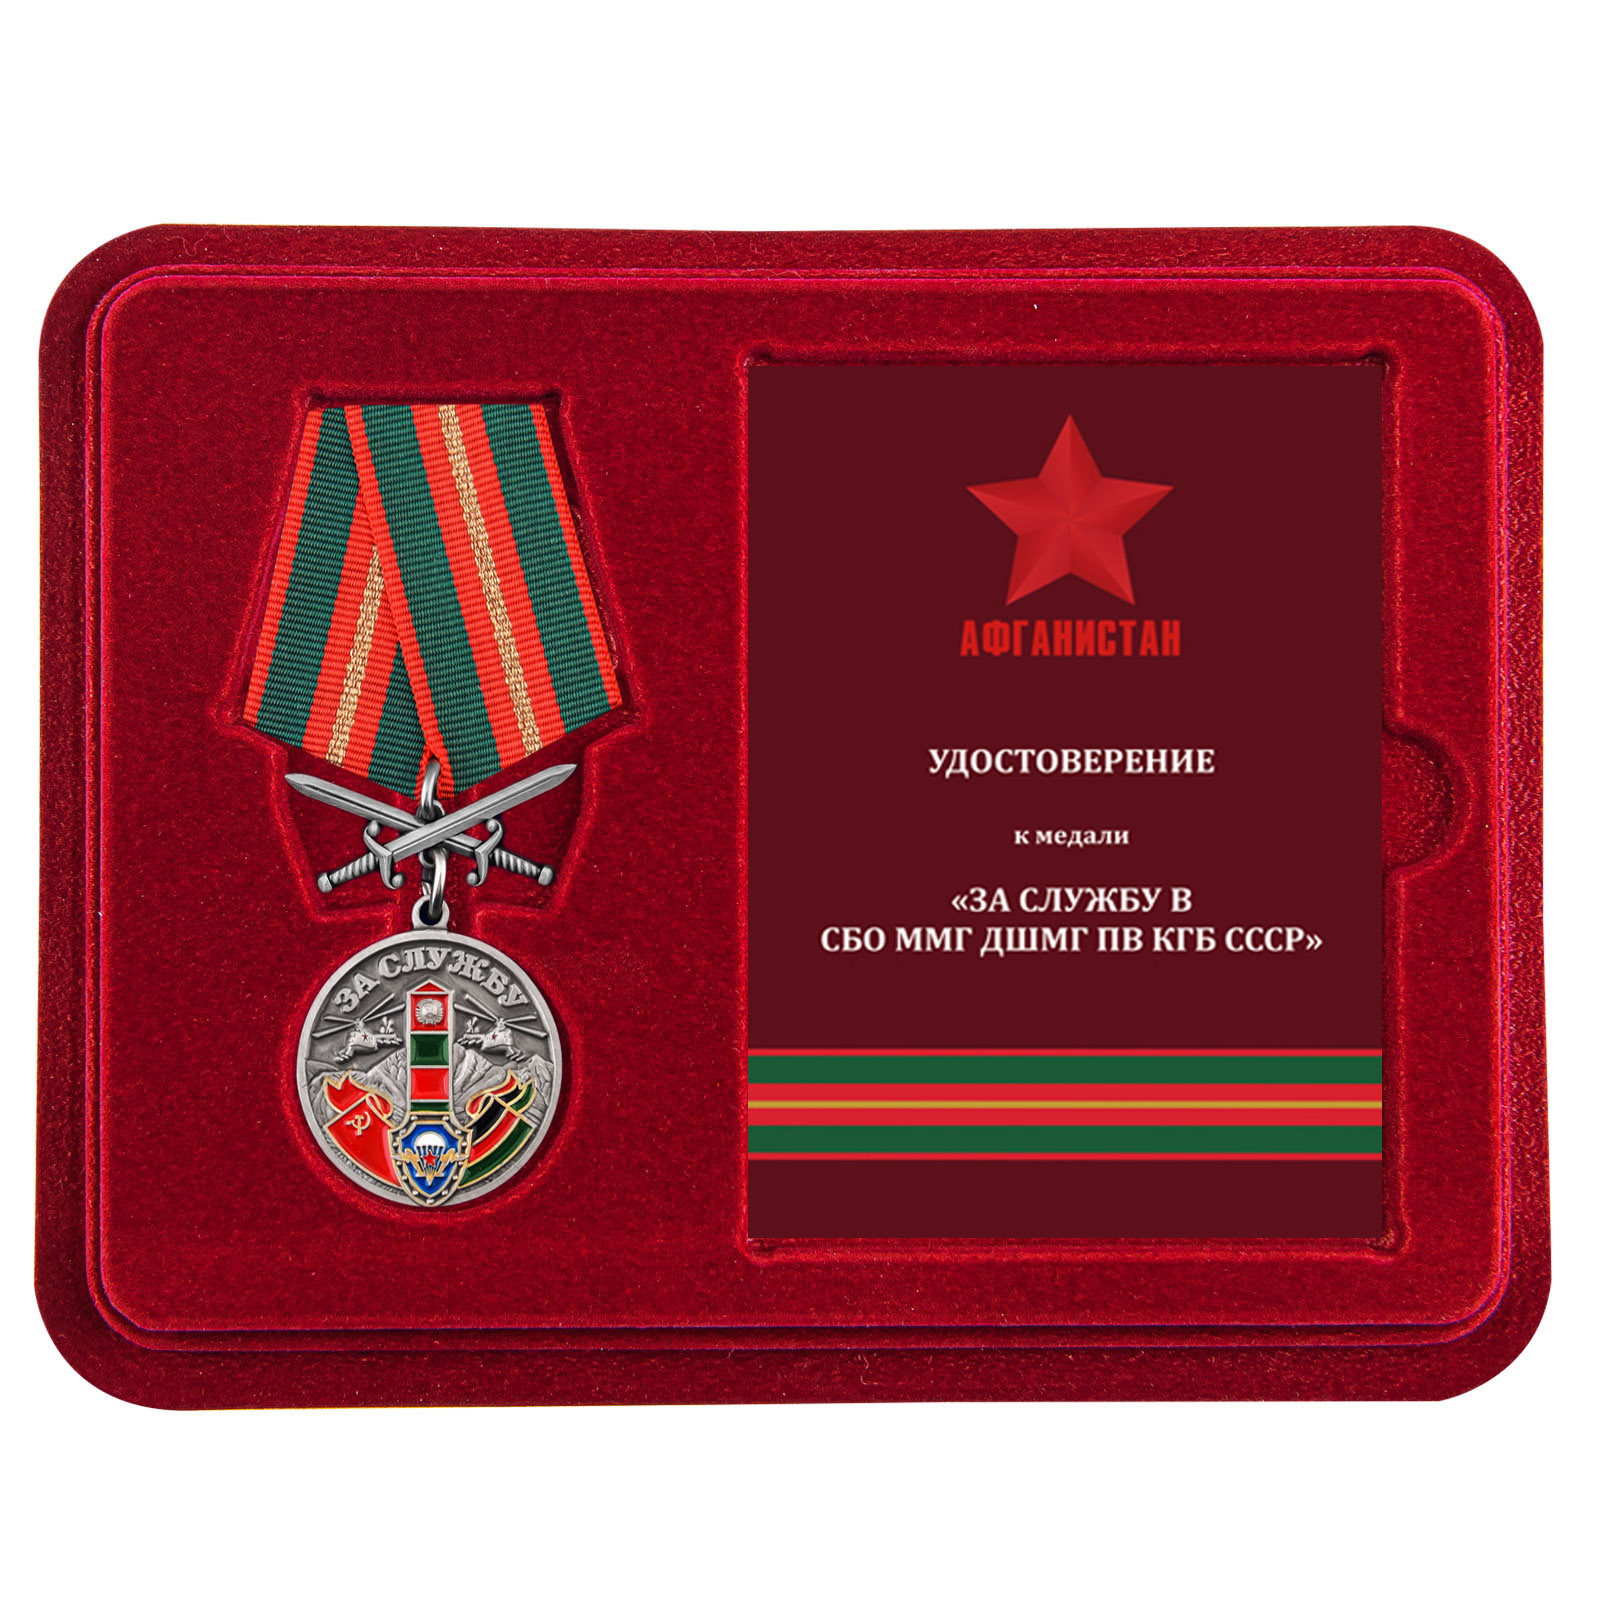 Купить медаль За службу в СБО, ММГ, ДШМГ, ПВ КГБ СССР Афганистан онлайн